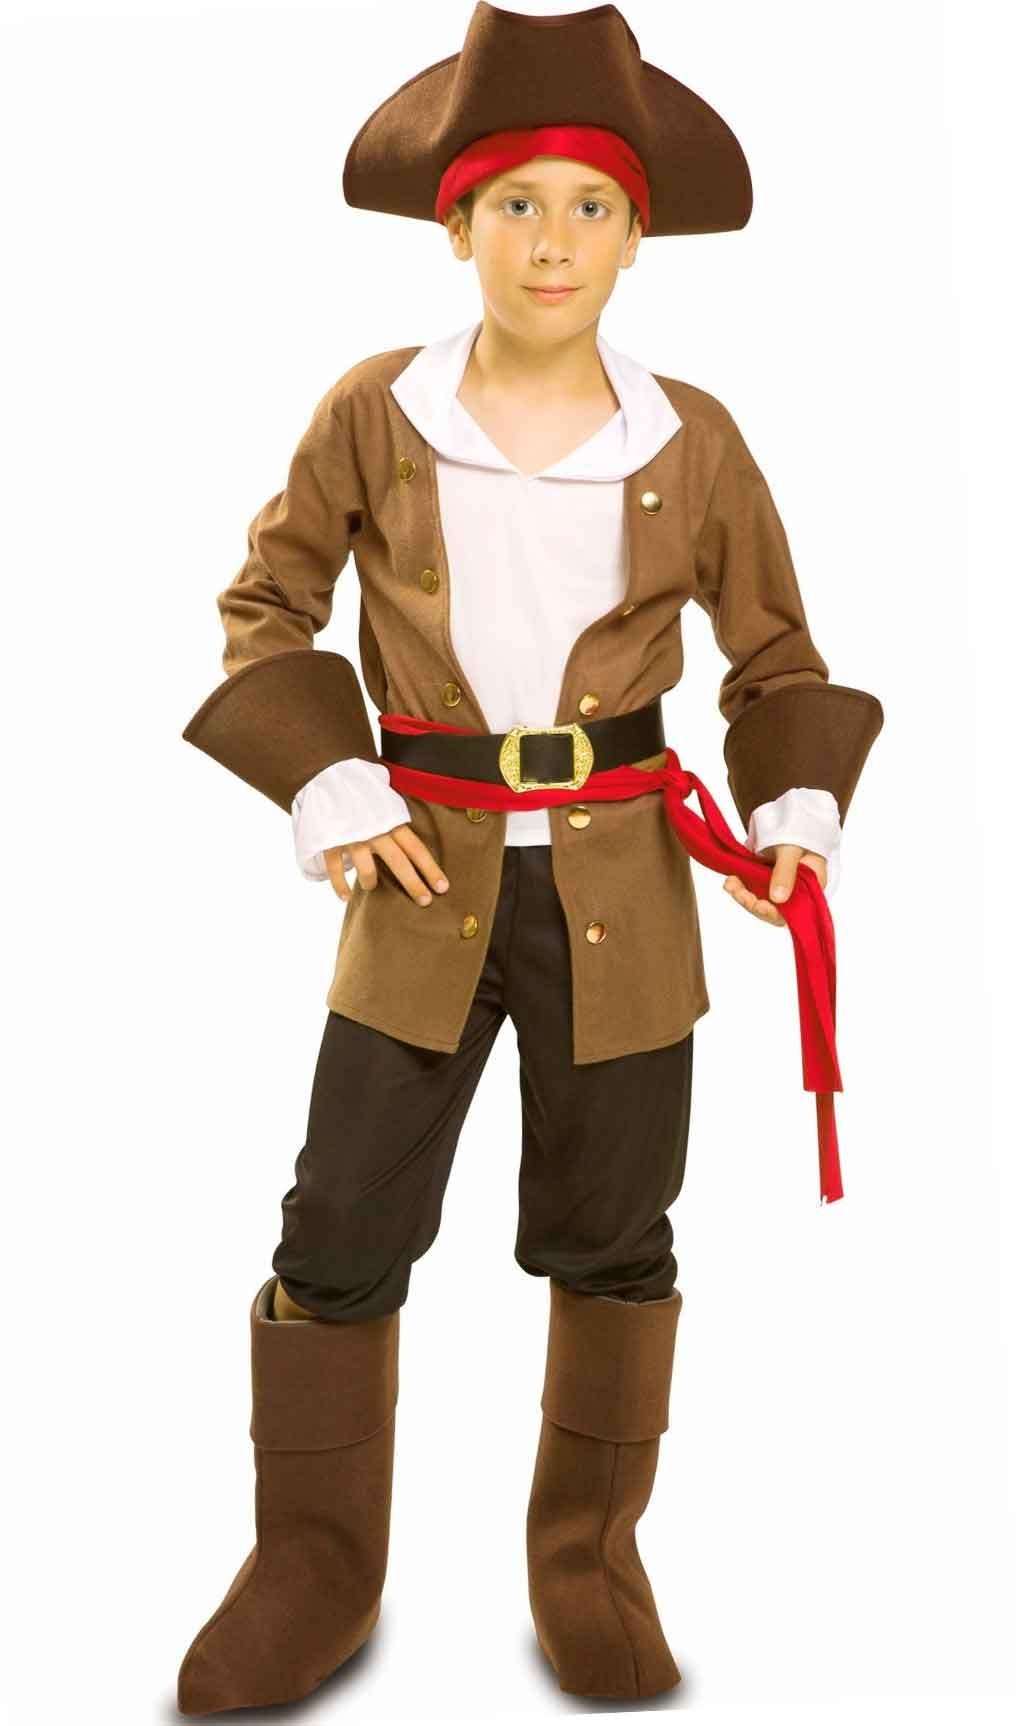 Bambino Misura Pirata Cappello Bambini Bucaniere Pirata Costume Pirati  Bambine S 5056021020003